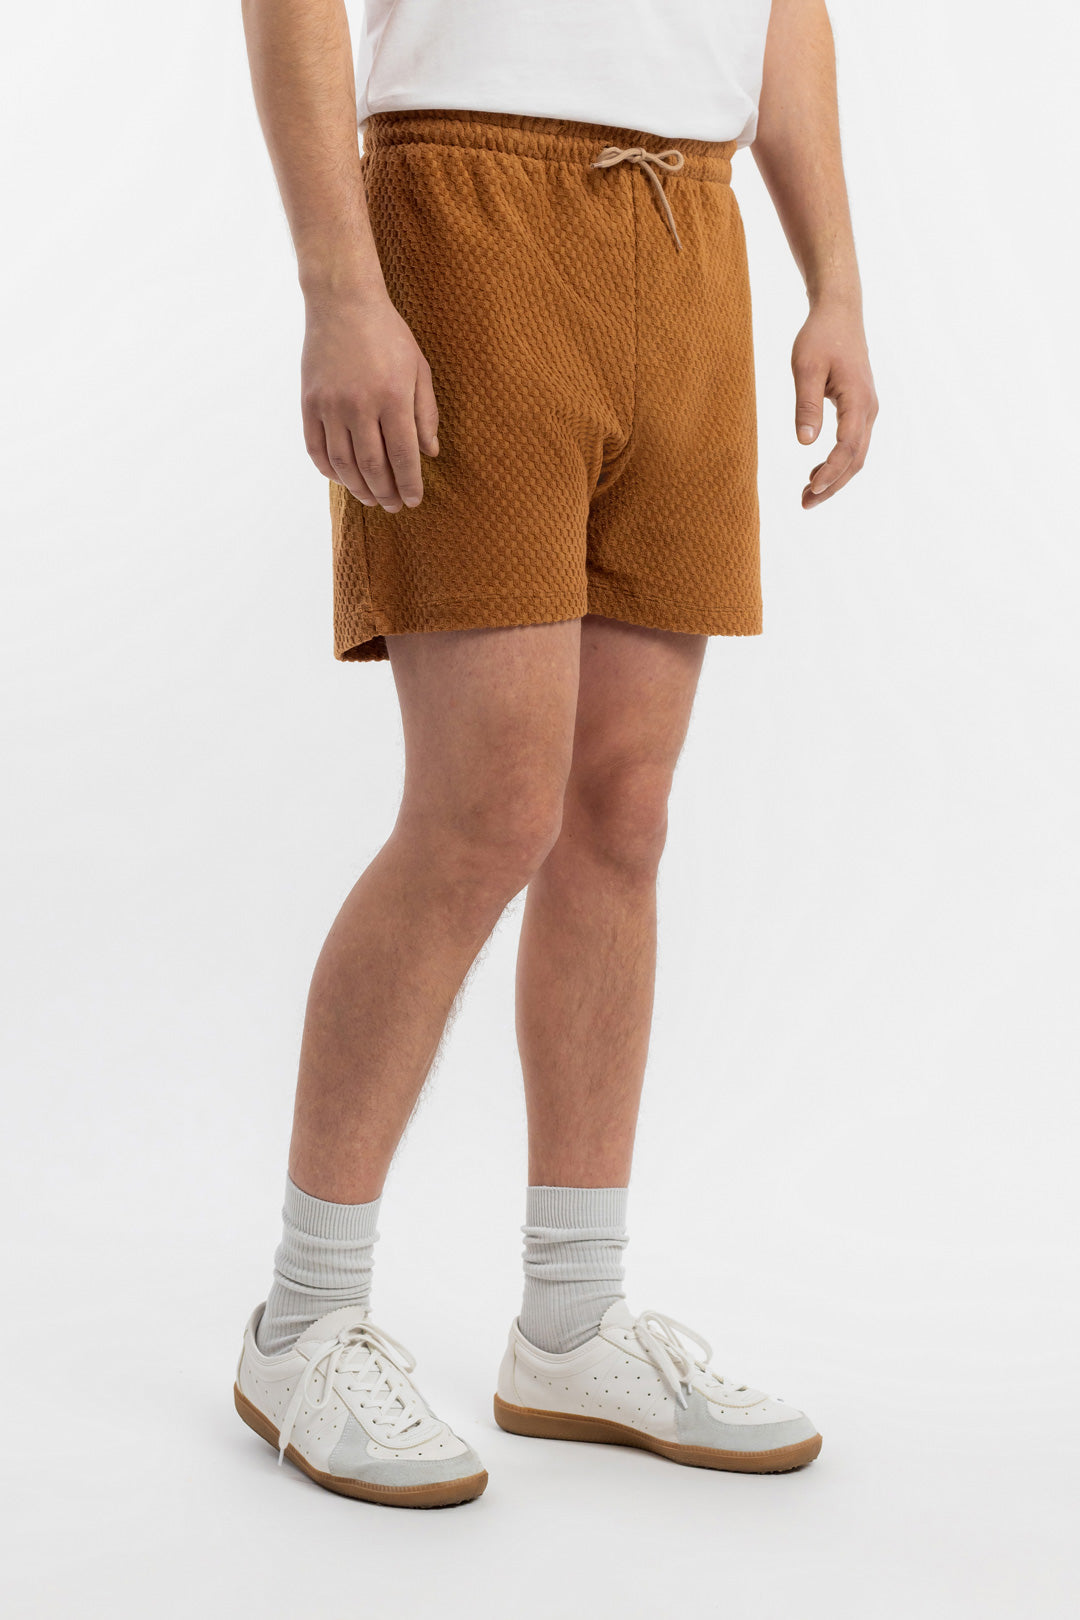 Karamellfarbene kurze Hose aus 100% Bio-Baumwolle-Jersey von Rotholz